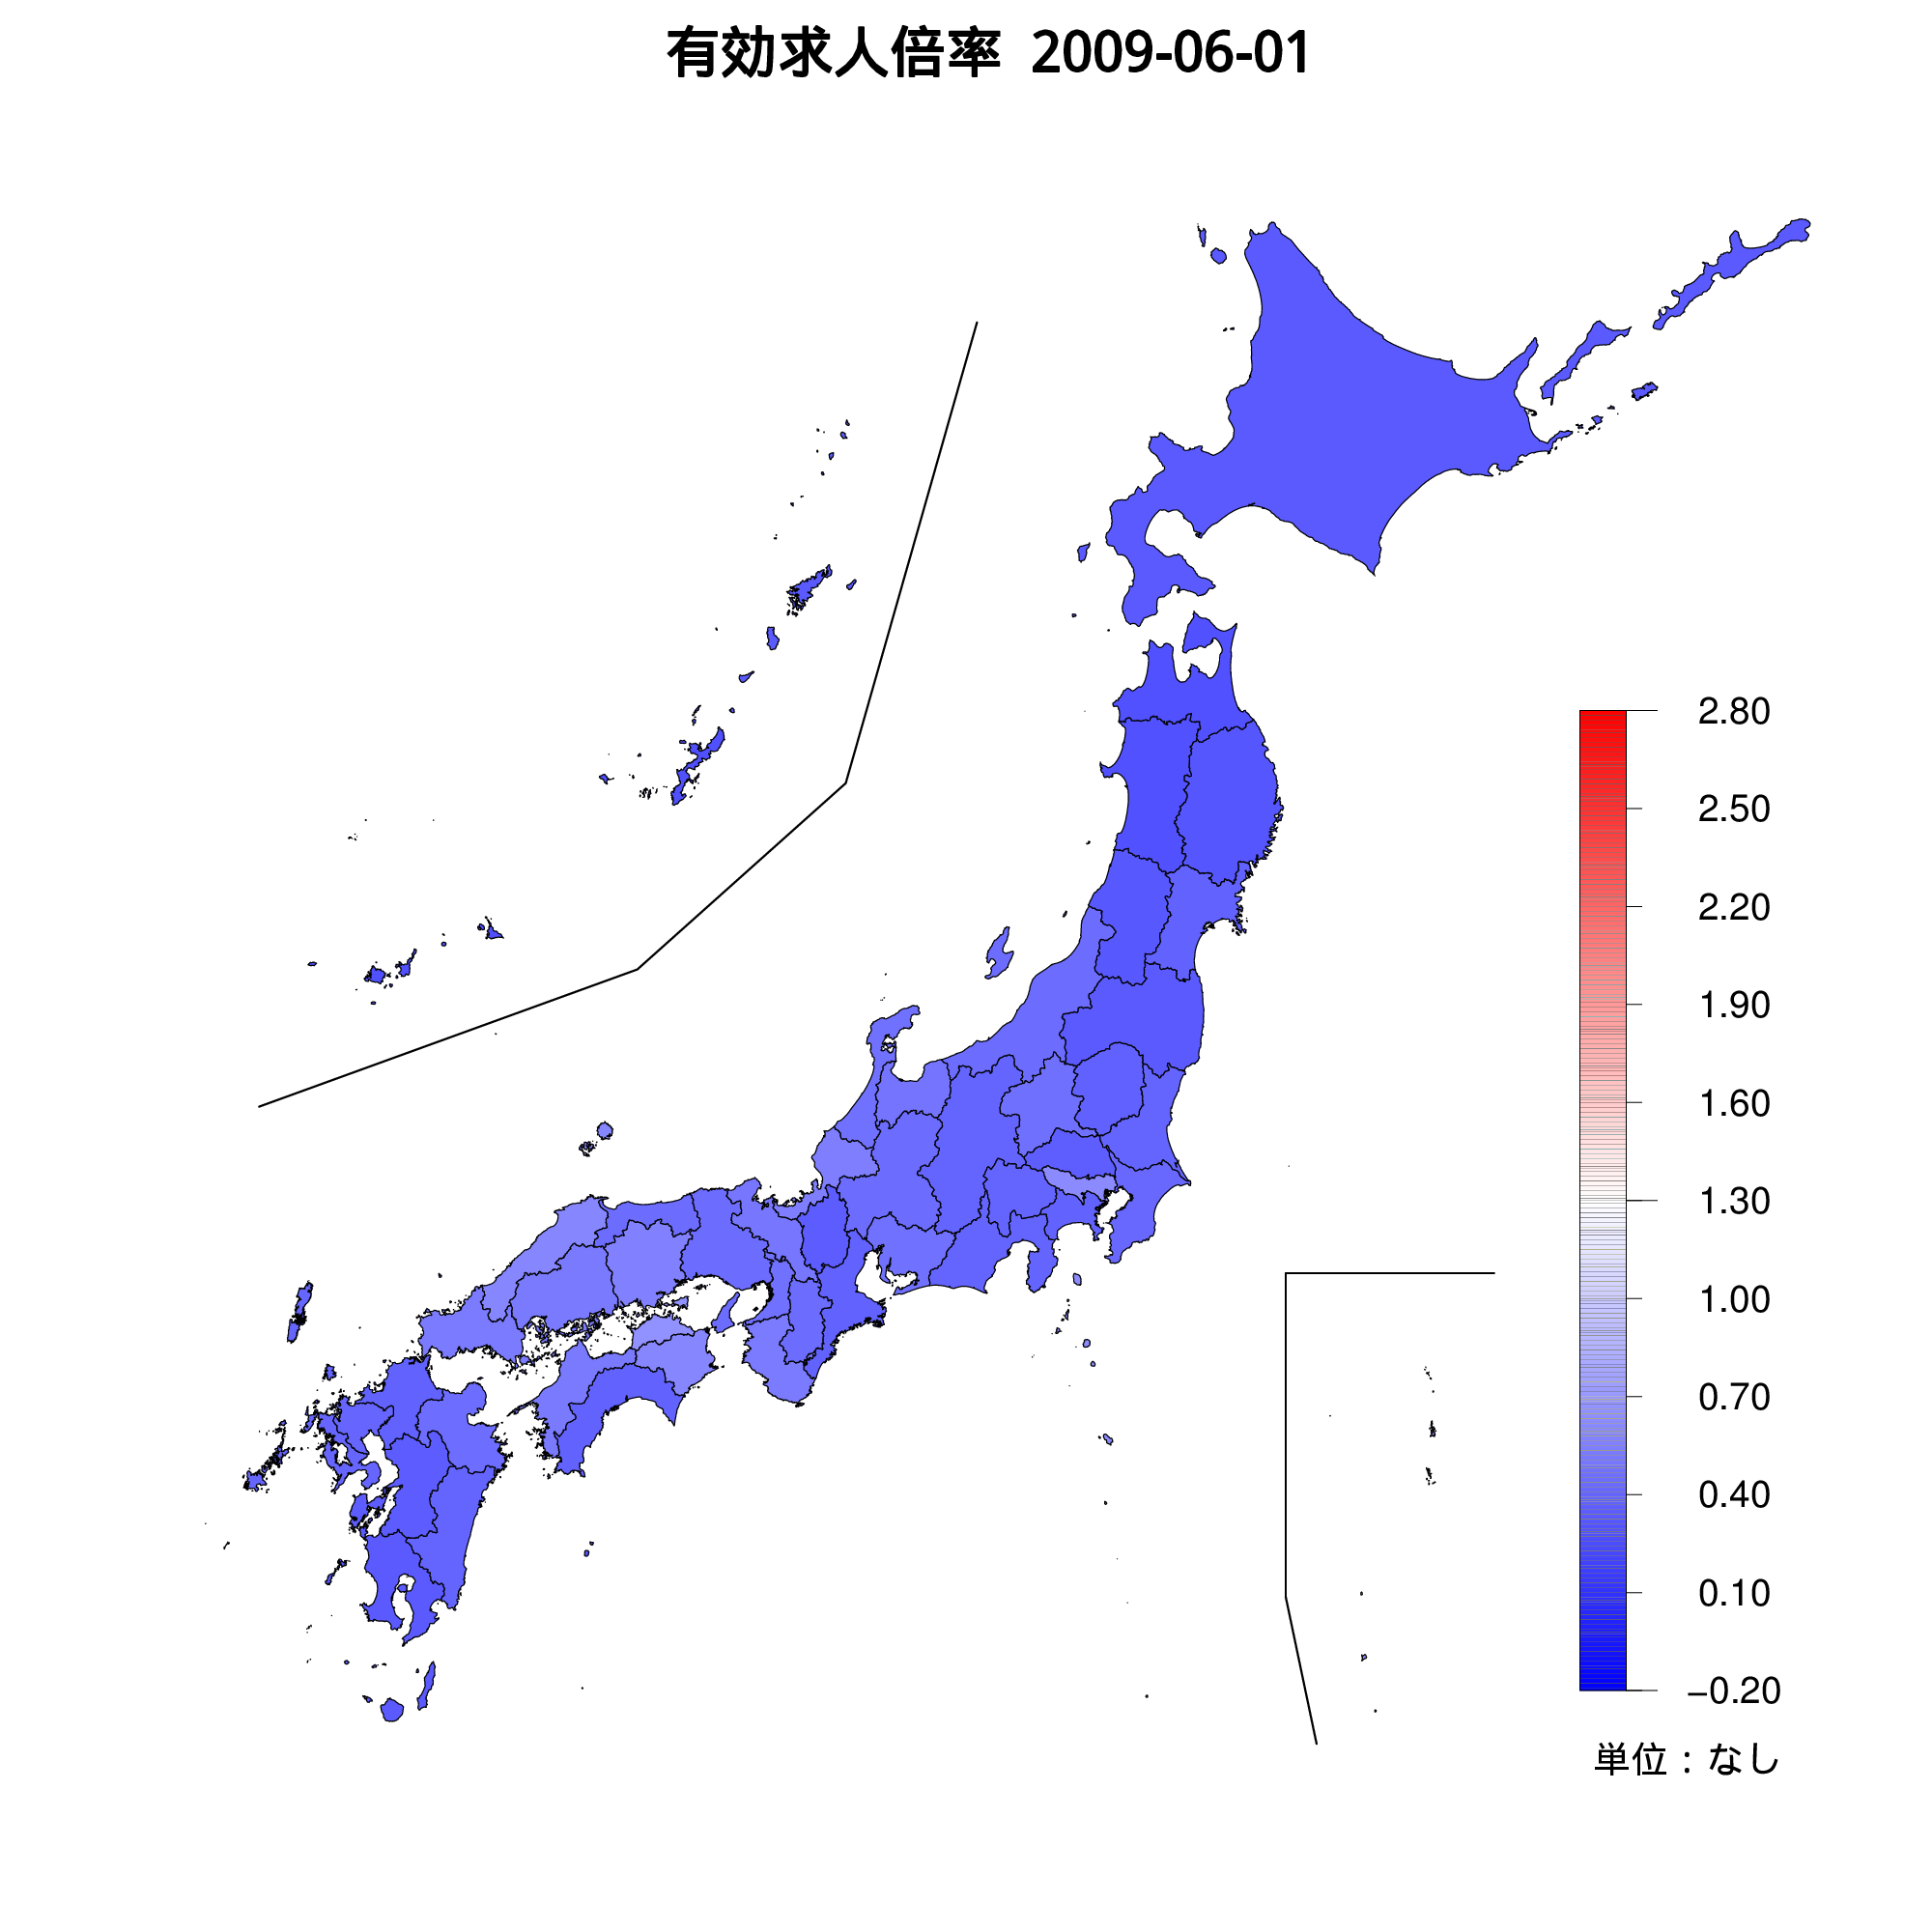 各都道府県の有効求人倍率を示す地図（2009年06月）